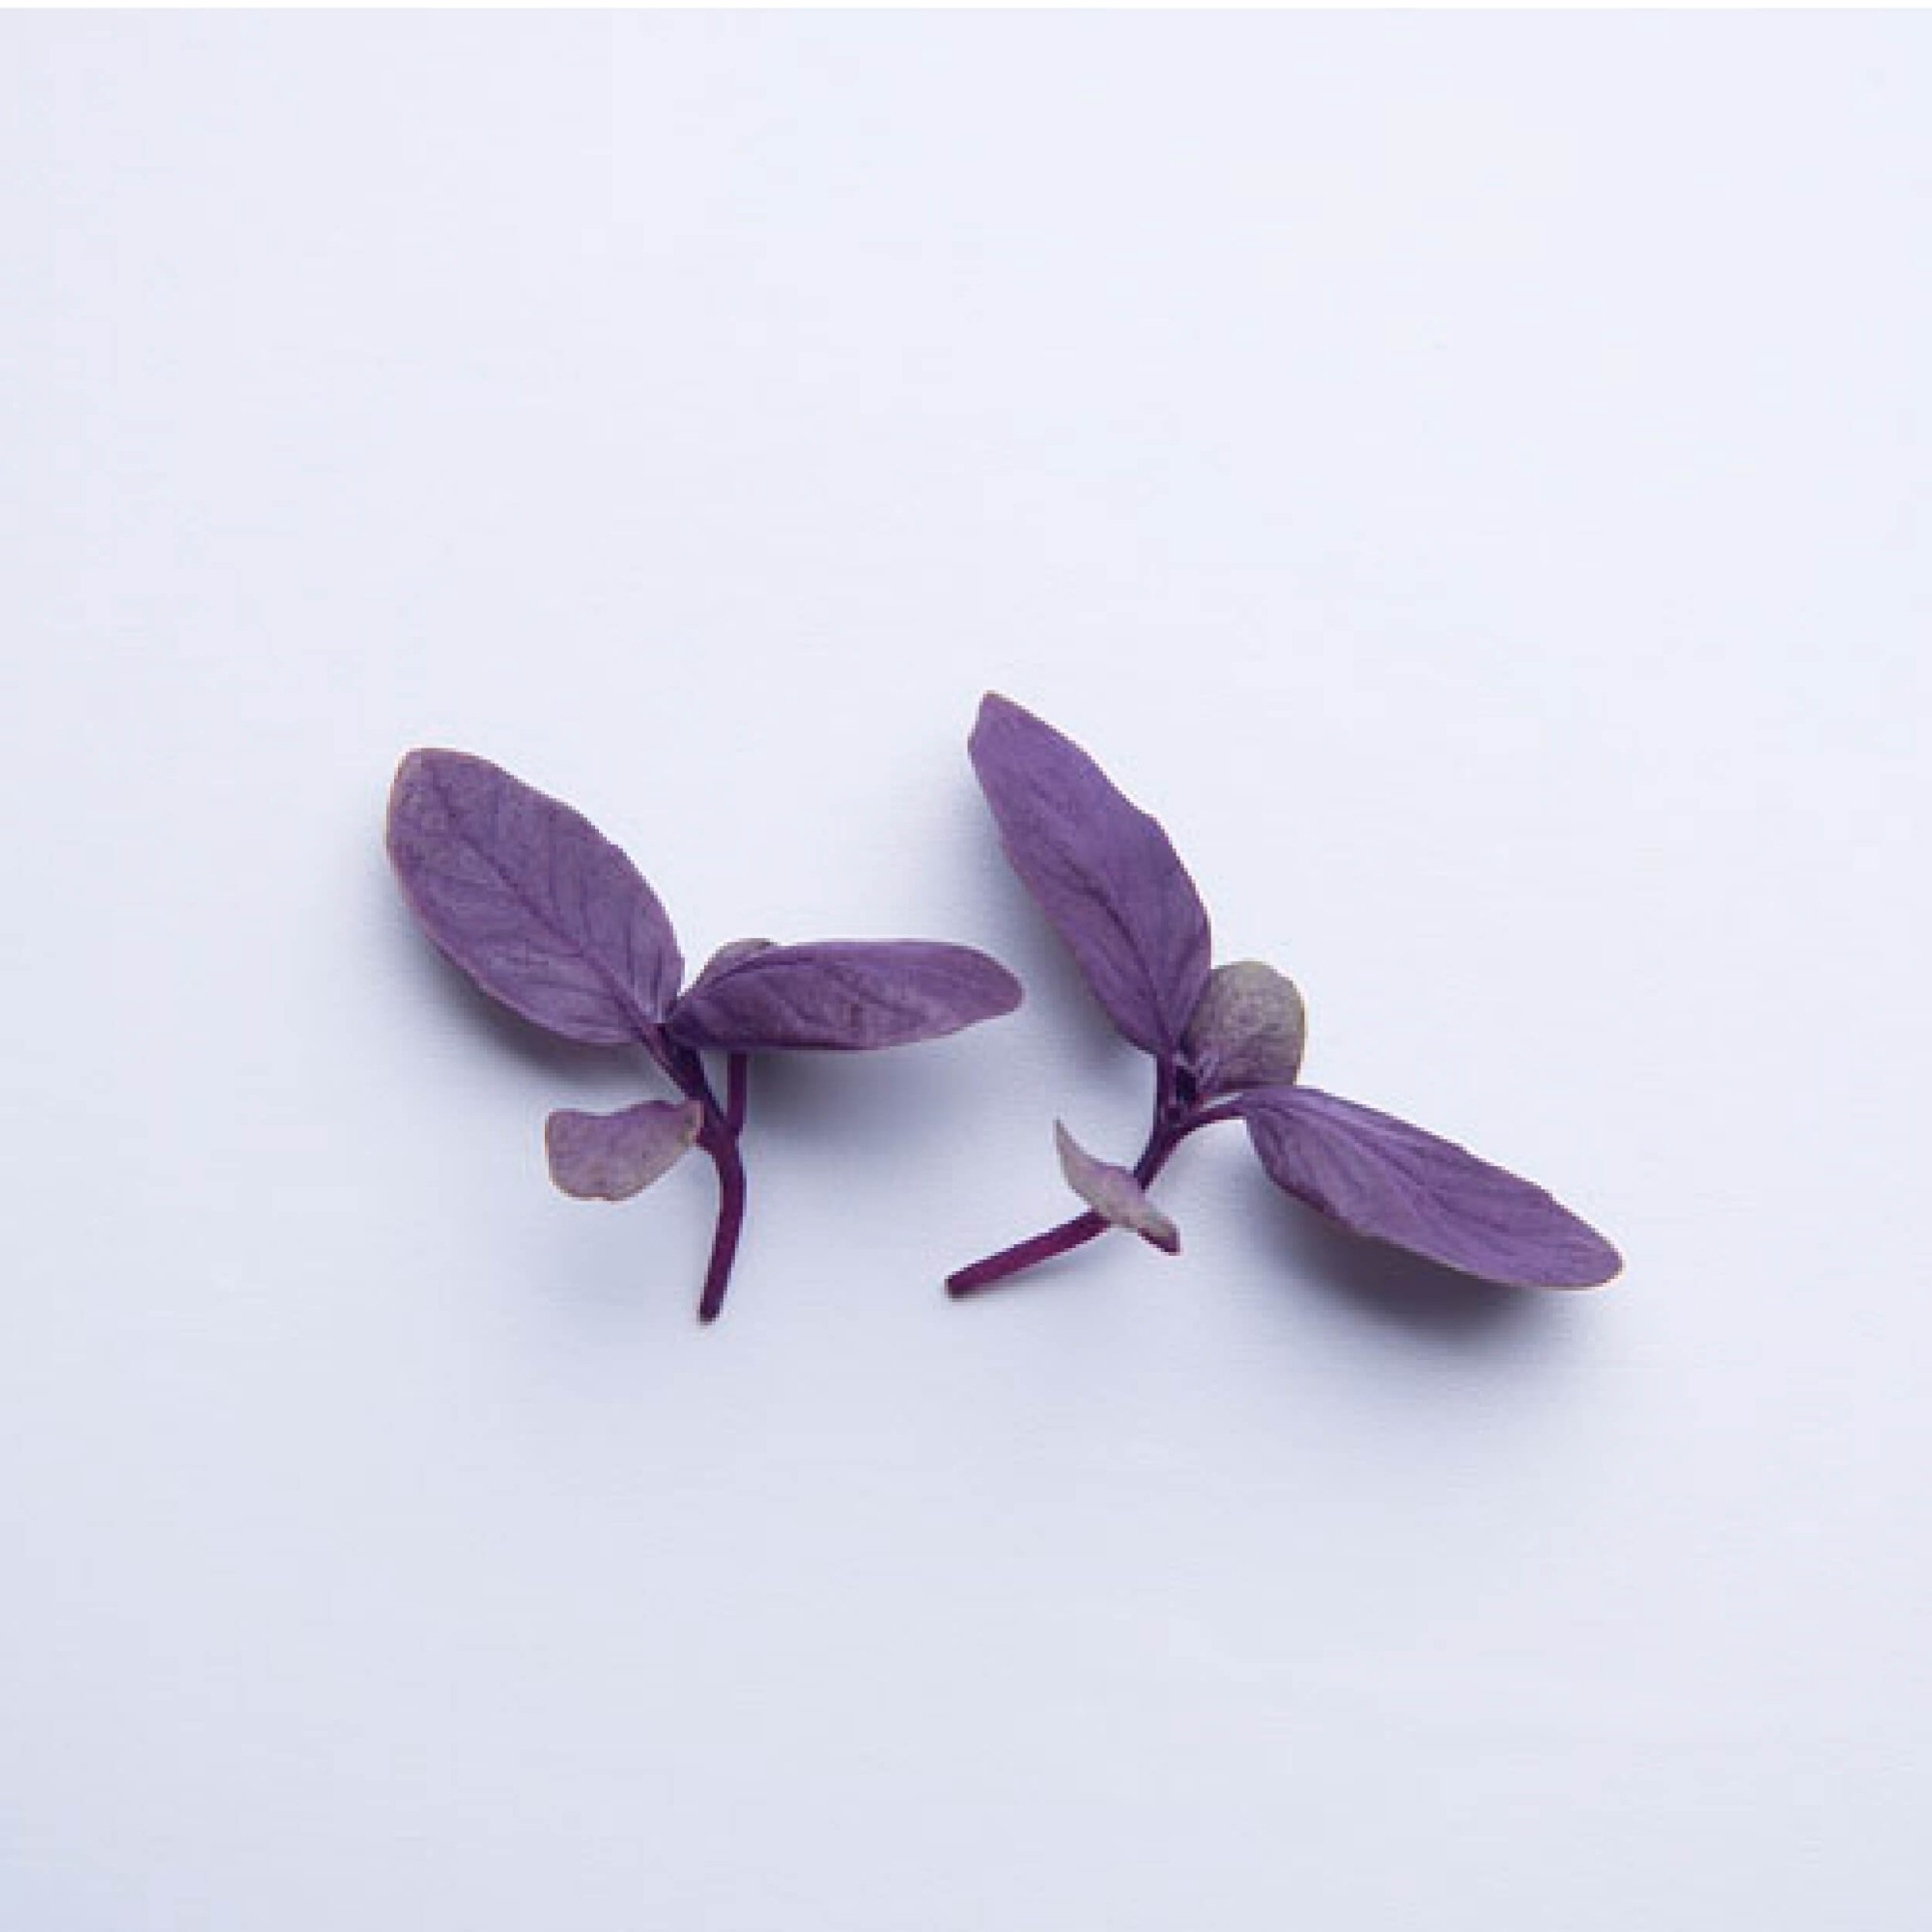 Sementes para cultivar Manjericão Roxo baby Leaf em vasos autoirrigáveis RAIZ  - Loja Raiz